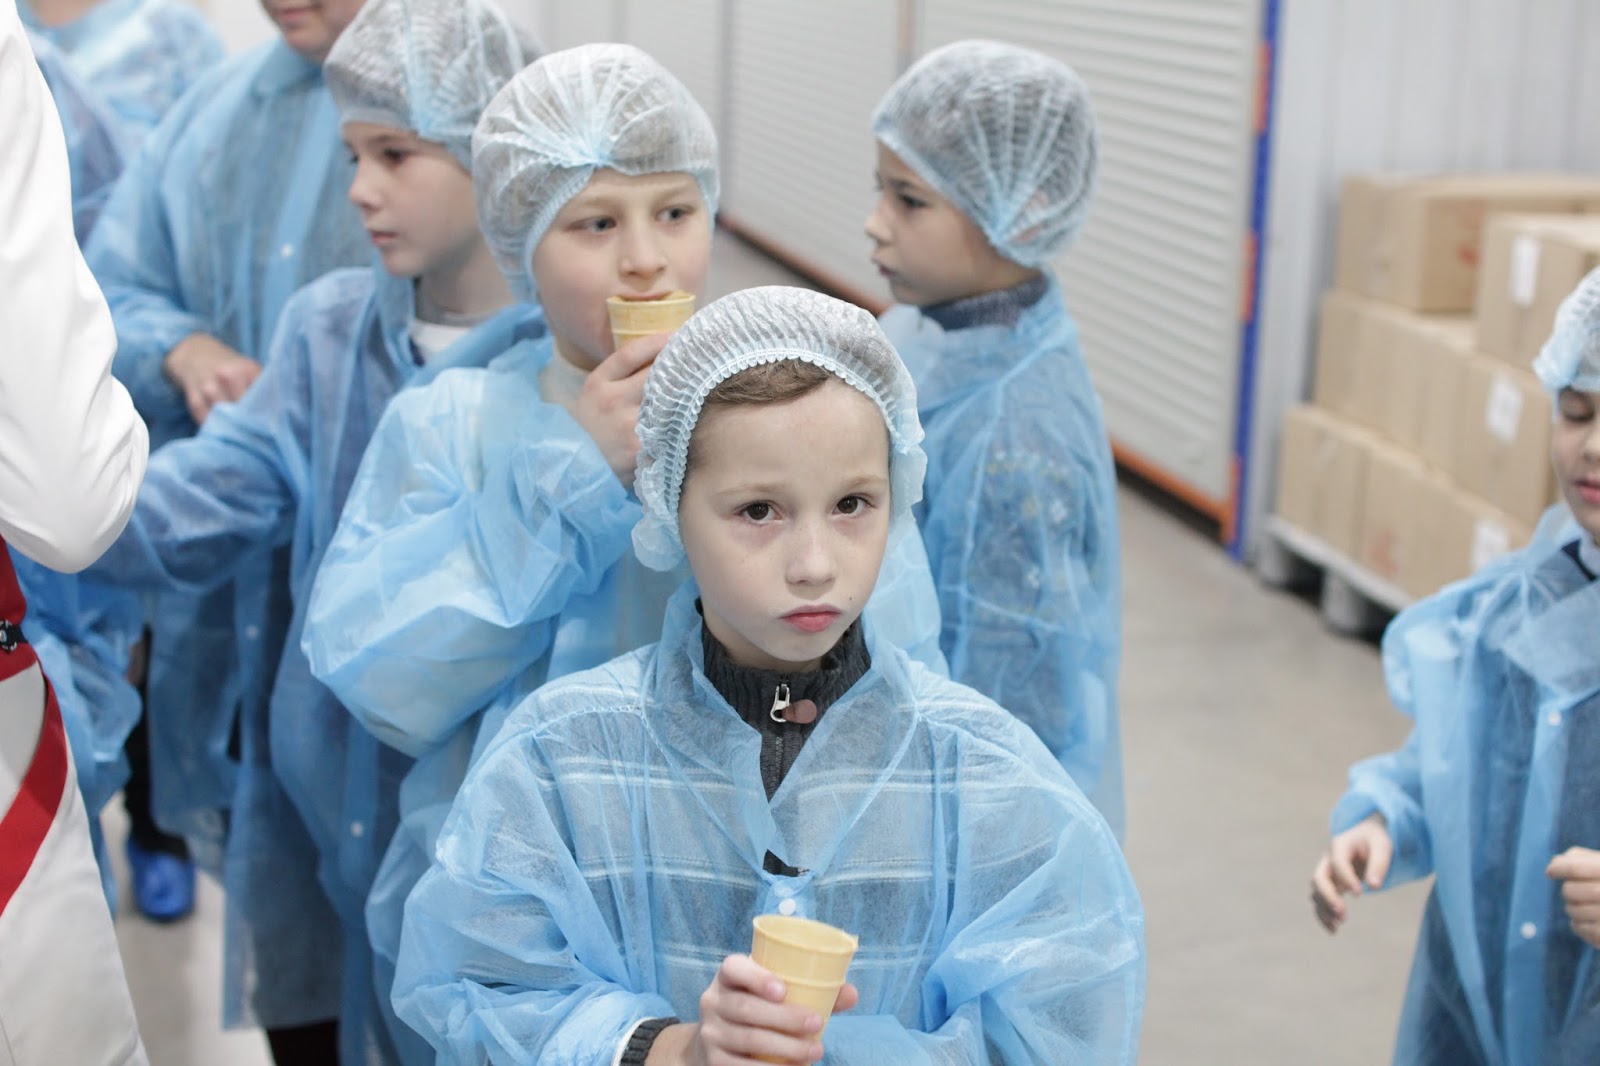 Экскурсия на фабрику мороженого чистая линия. Фабрика мороженого чистая линия Москва. Чистая линия мороженое фабрика. Фабрика мороженого Долгопрудный. Экскурсии на чистую линию мороженое в москве